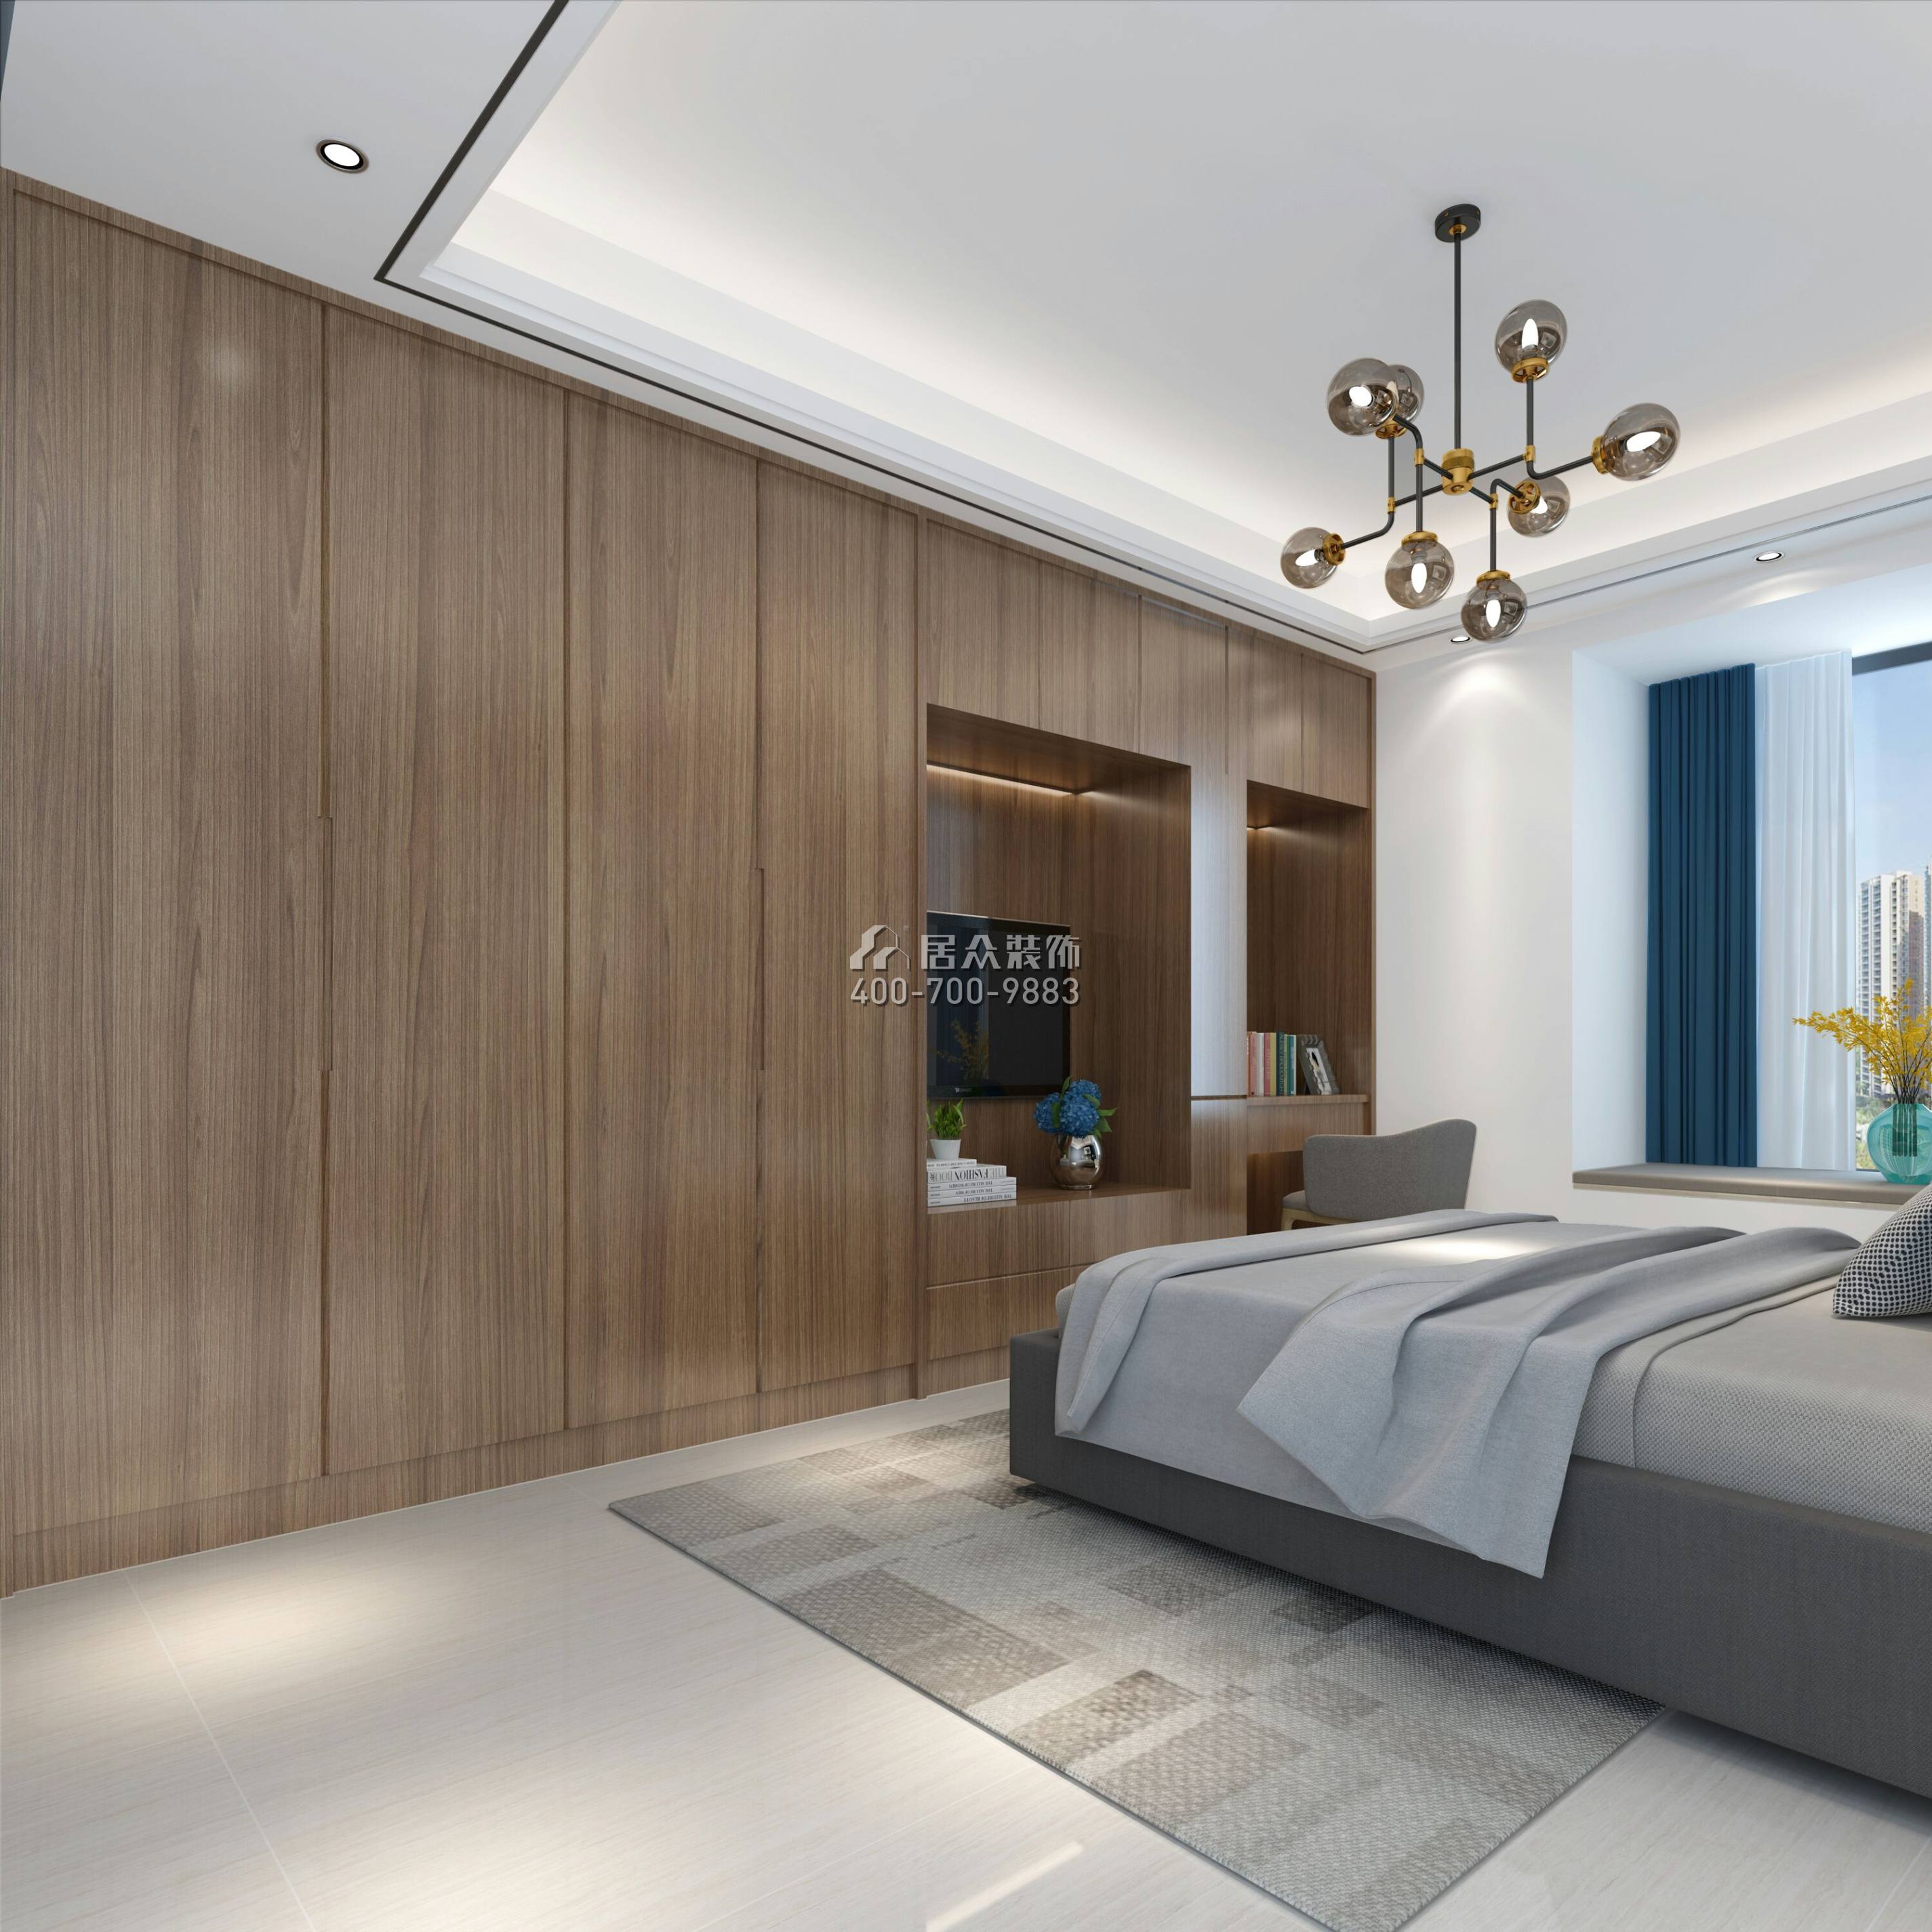 润科华府129平方米现代简约风格平层户型卧室装修效果图